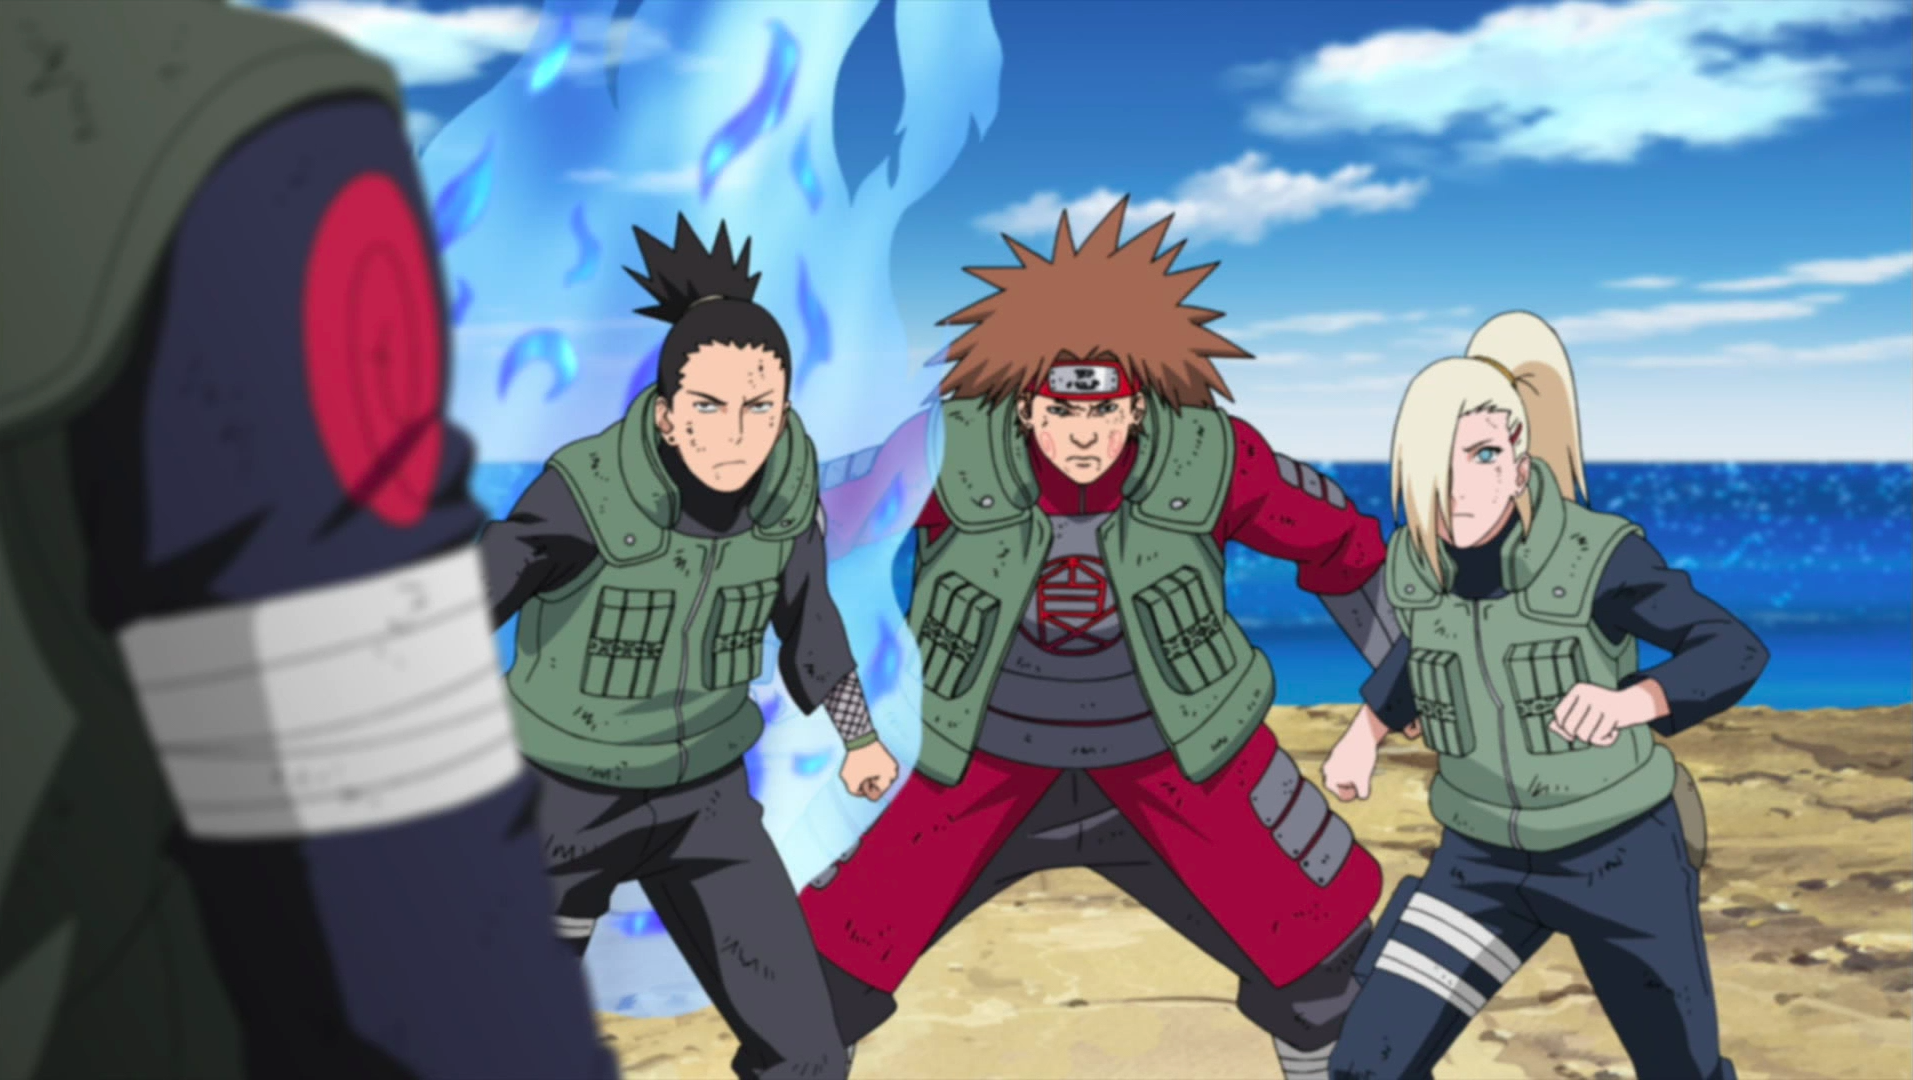 Temari Shikamaru e Ino vs. Kujaku (Reaction) Naruto dublado 